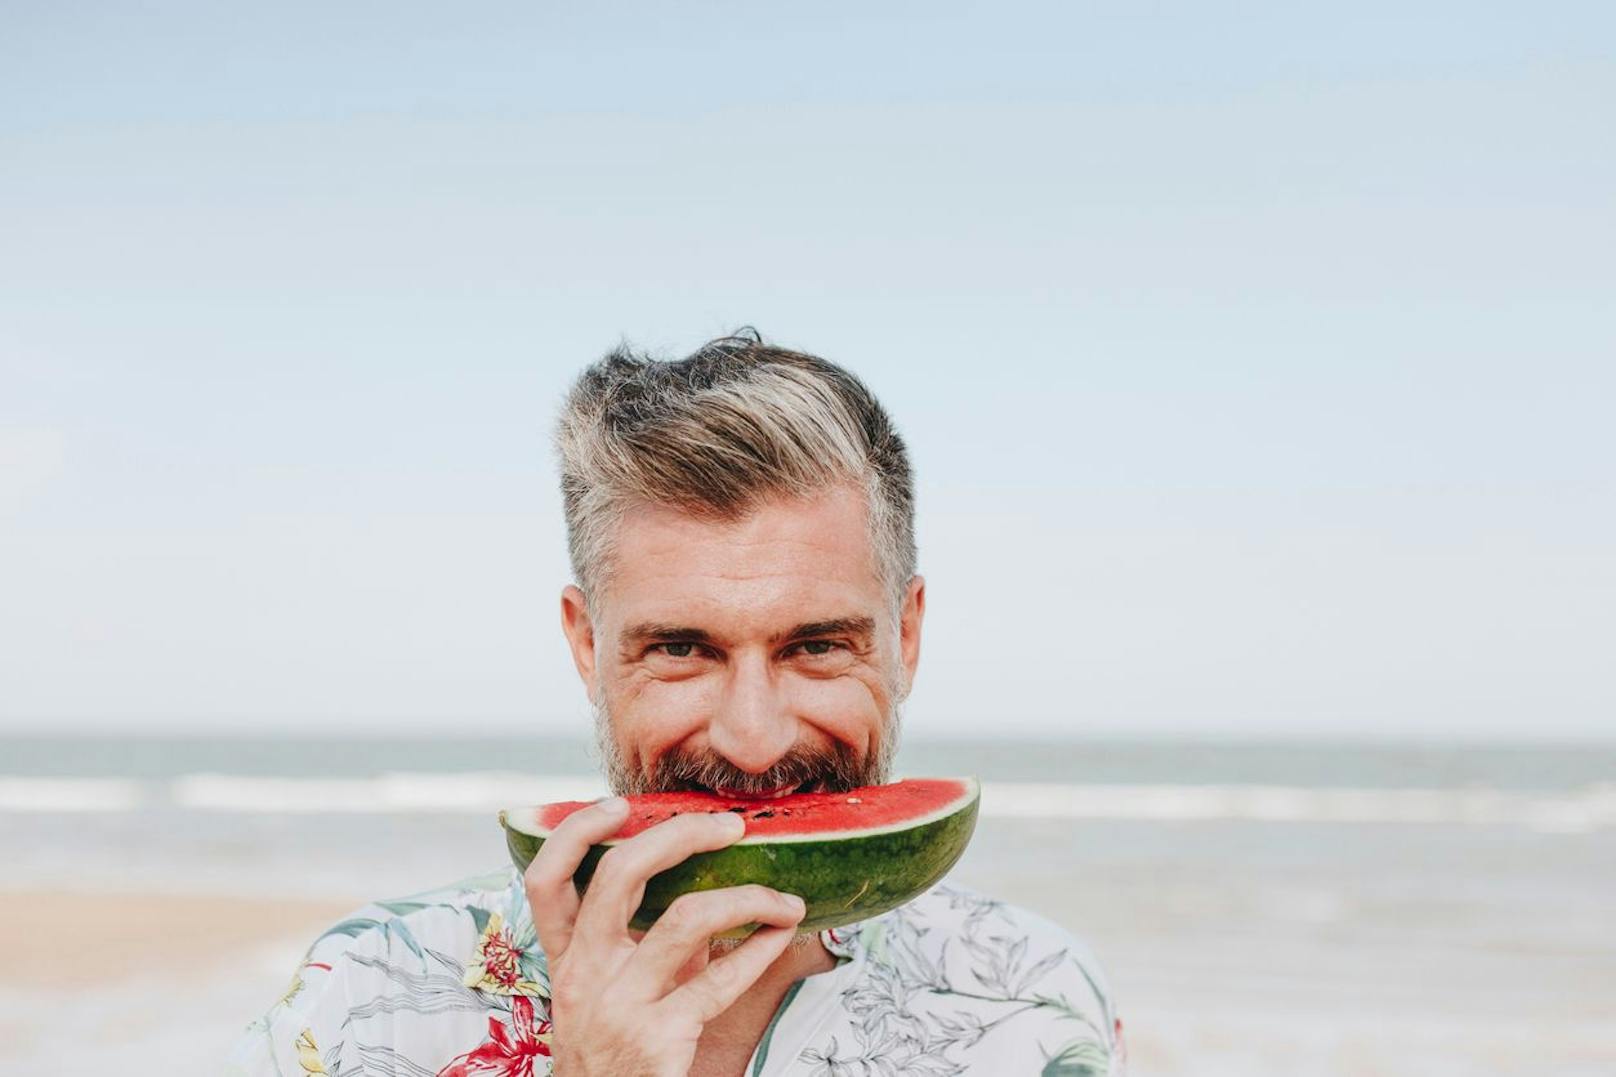 Männer, esst mehr Wassermelone! Sie wirkt wie Viagra